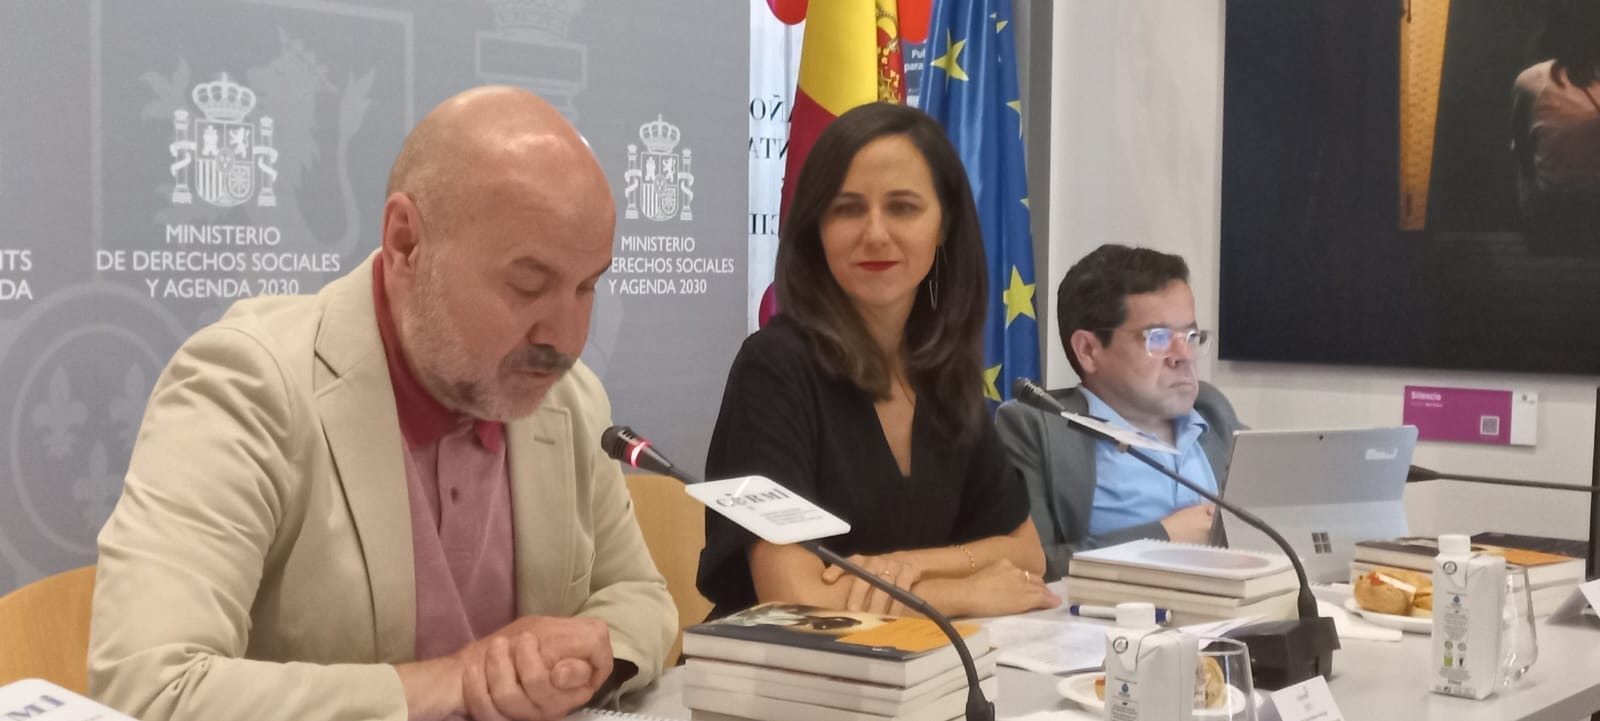 Ir a : Plena inclusión espera que el Plan de Acción de la Estrategia Española del Espectro Autista se despliegue en todo el país y se abra a la participación